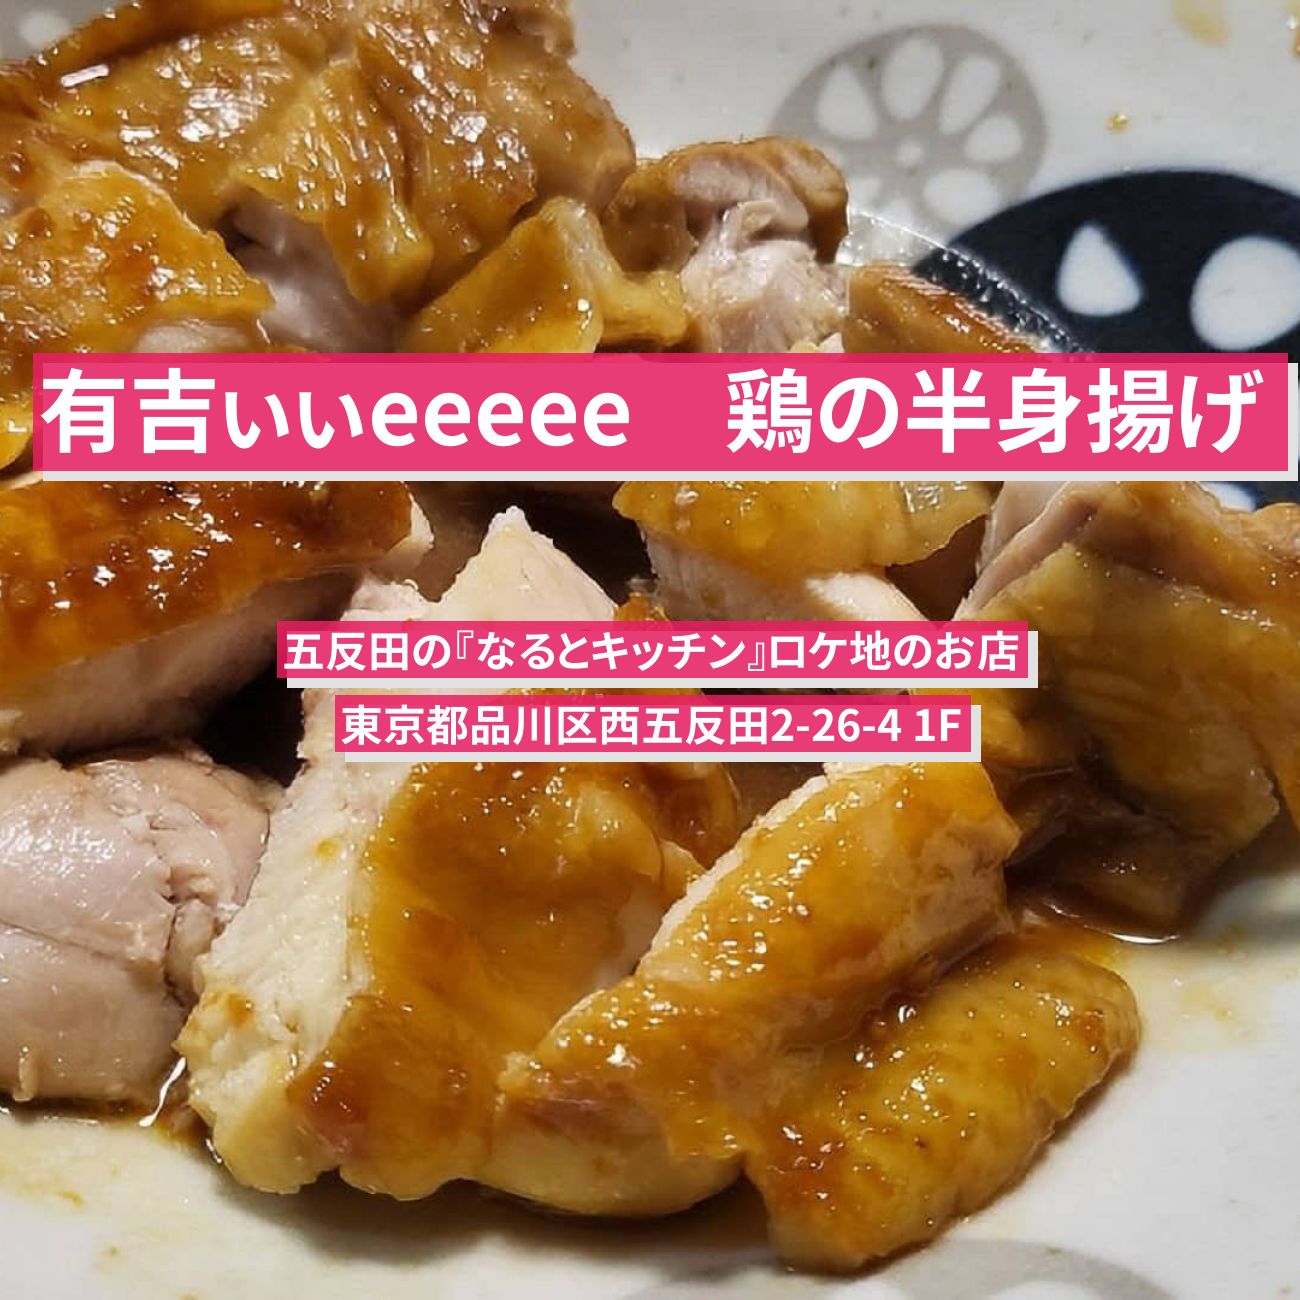 【有吉ぃぃeeeee】鶏の半身揚げ『なるとキッチン』五反田のロケ地のお店